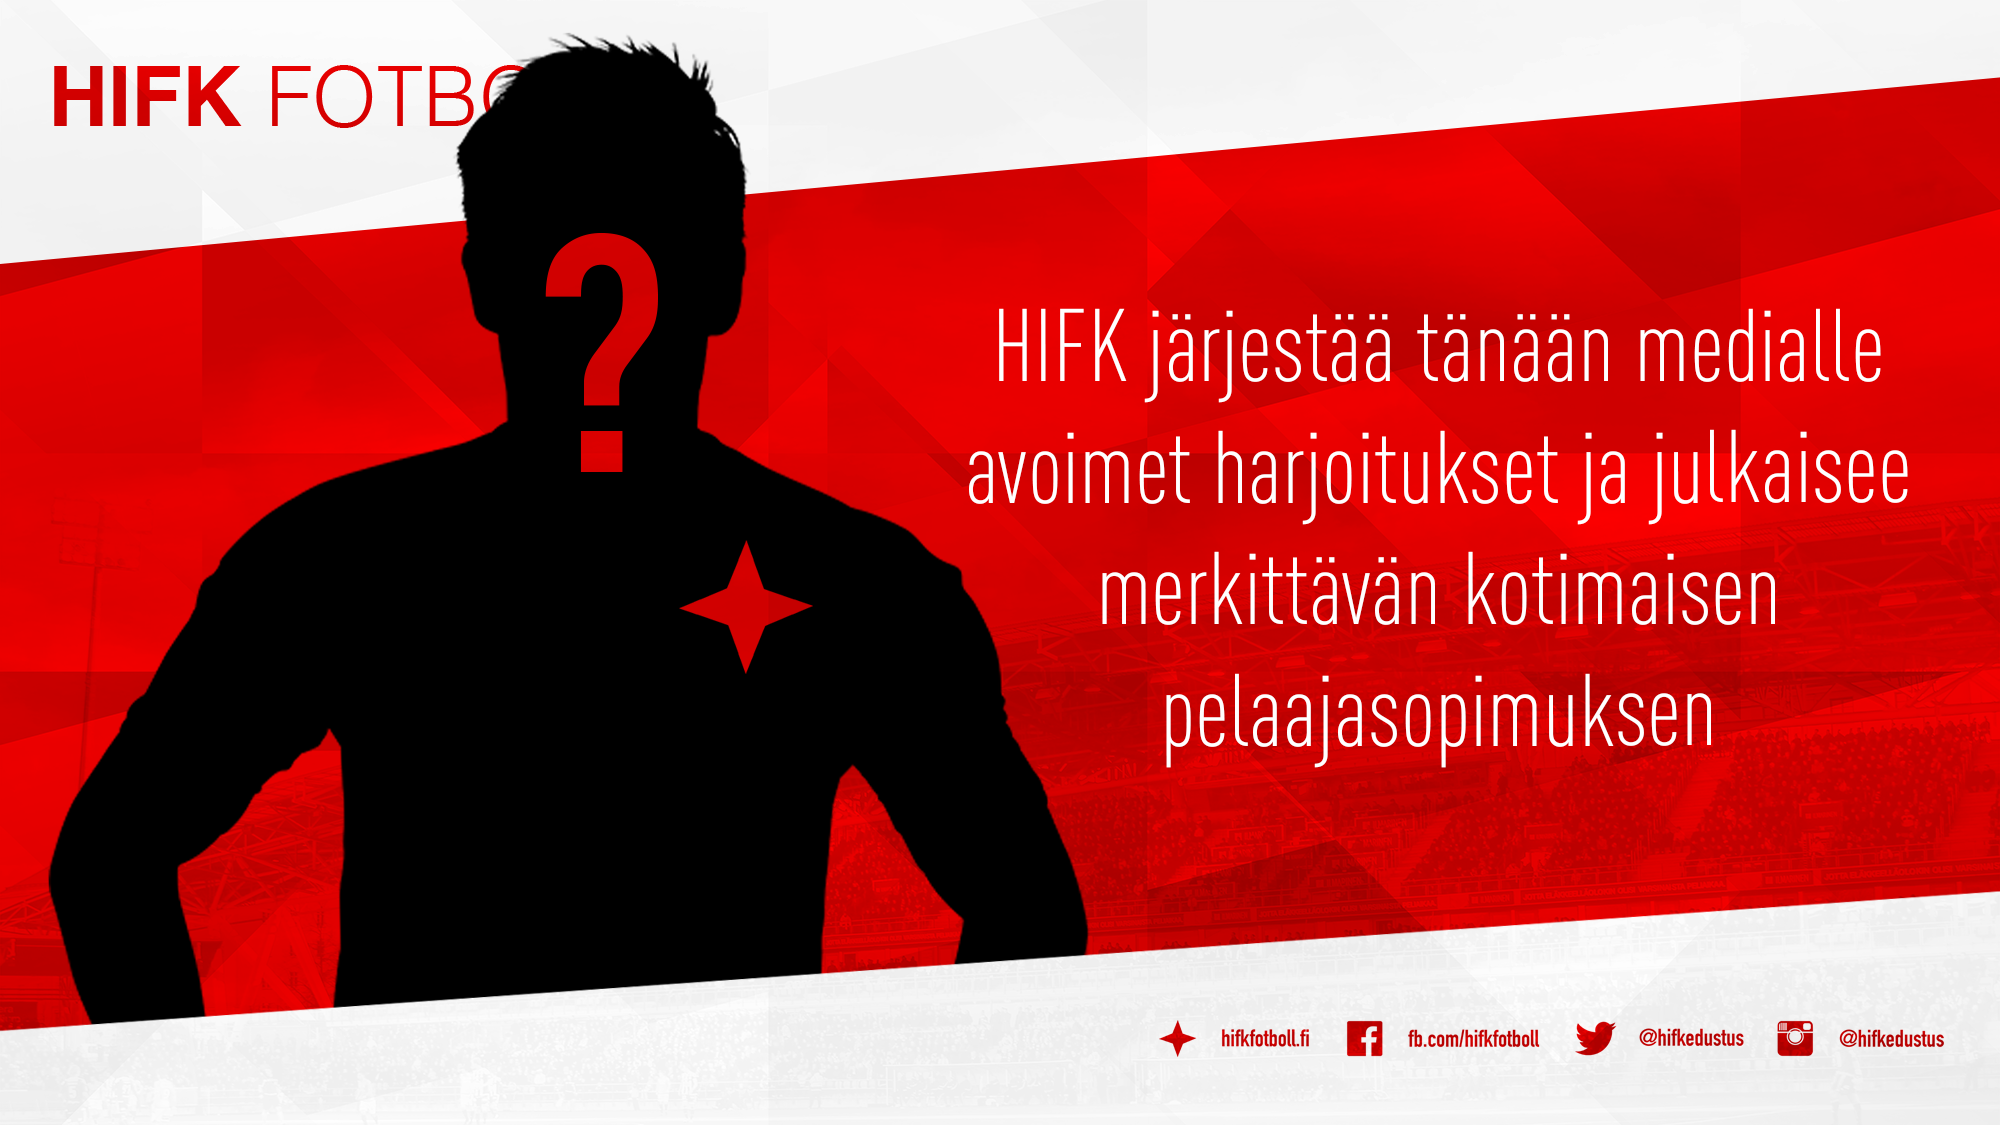 HIFK järjestää tänään medialle avoimet harjoitukset ja julkaisee merkittävän kotimaisen pelaajasopimuksen